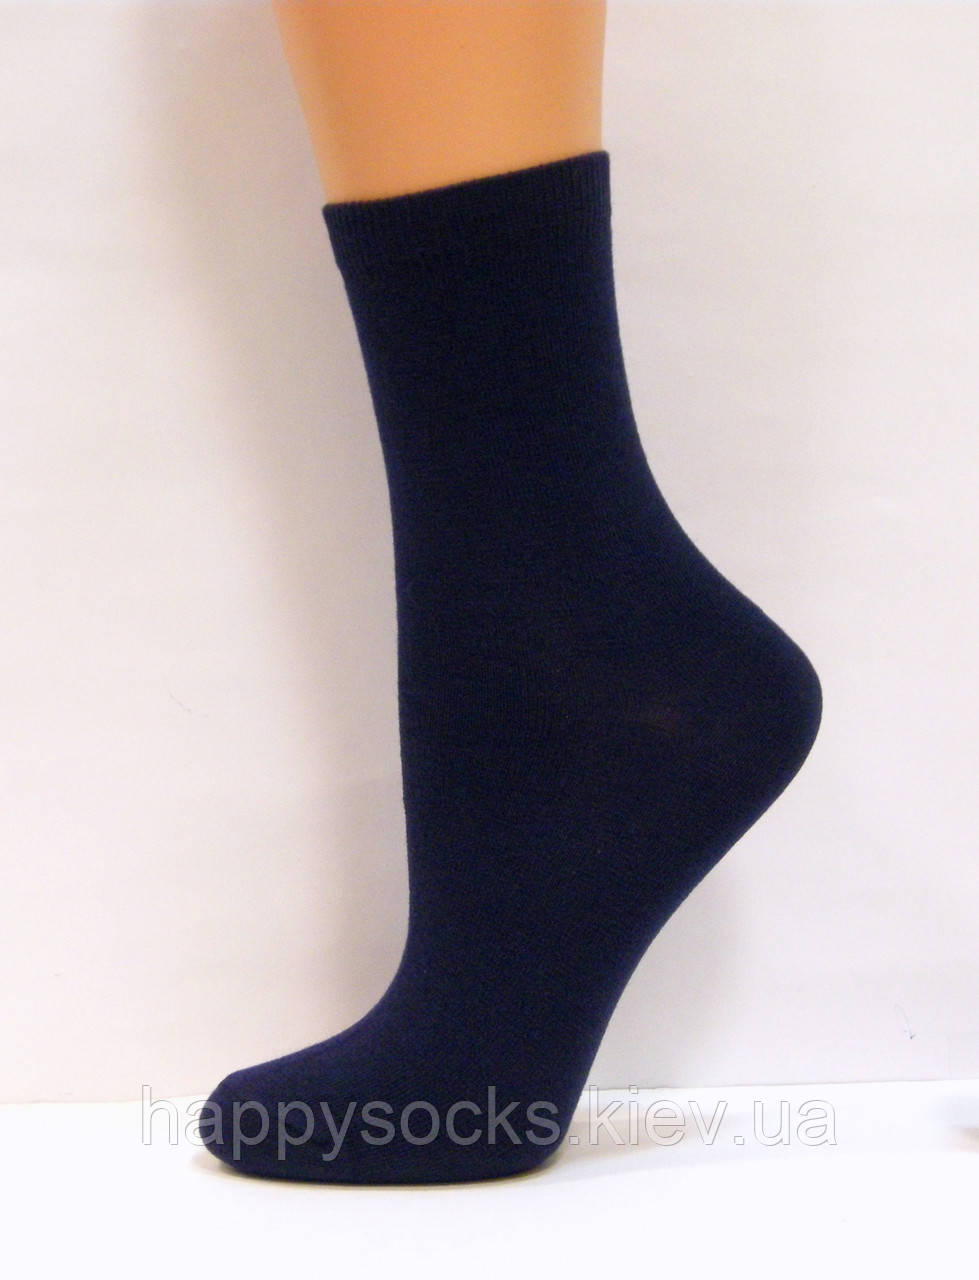 Хлопчачі високі шкарпетки для школи темно-синього кольору, фото 1